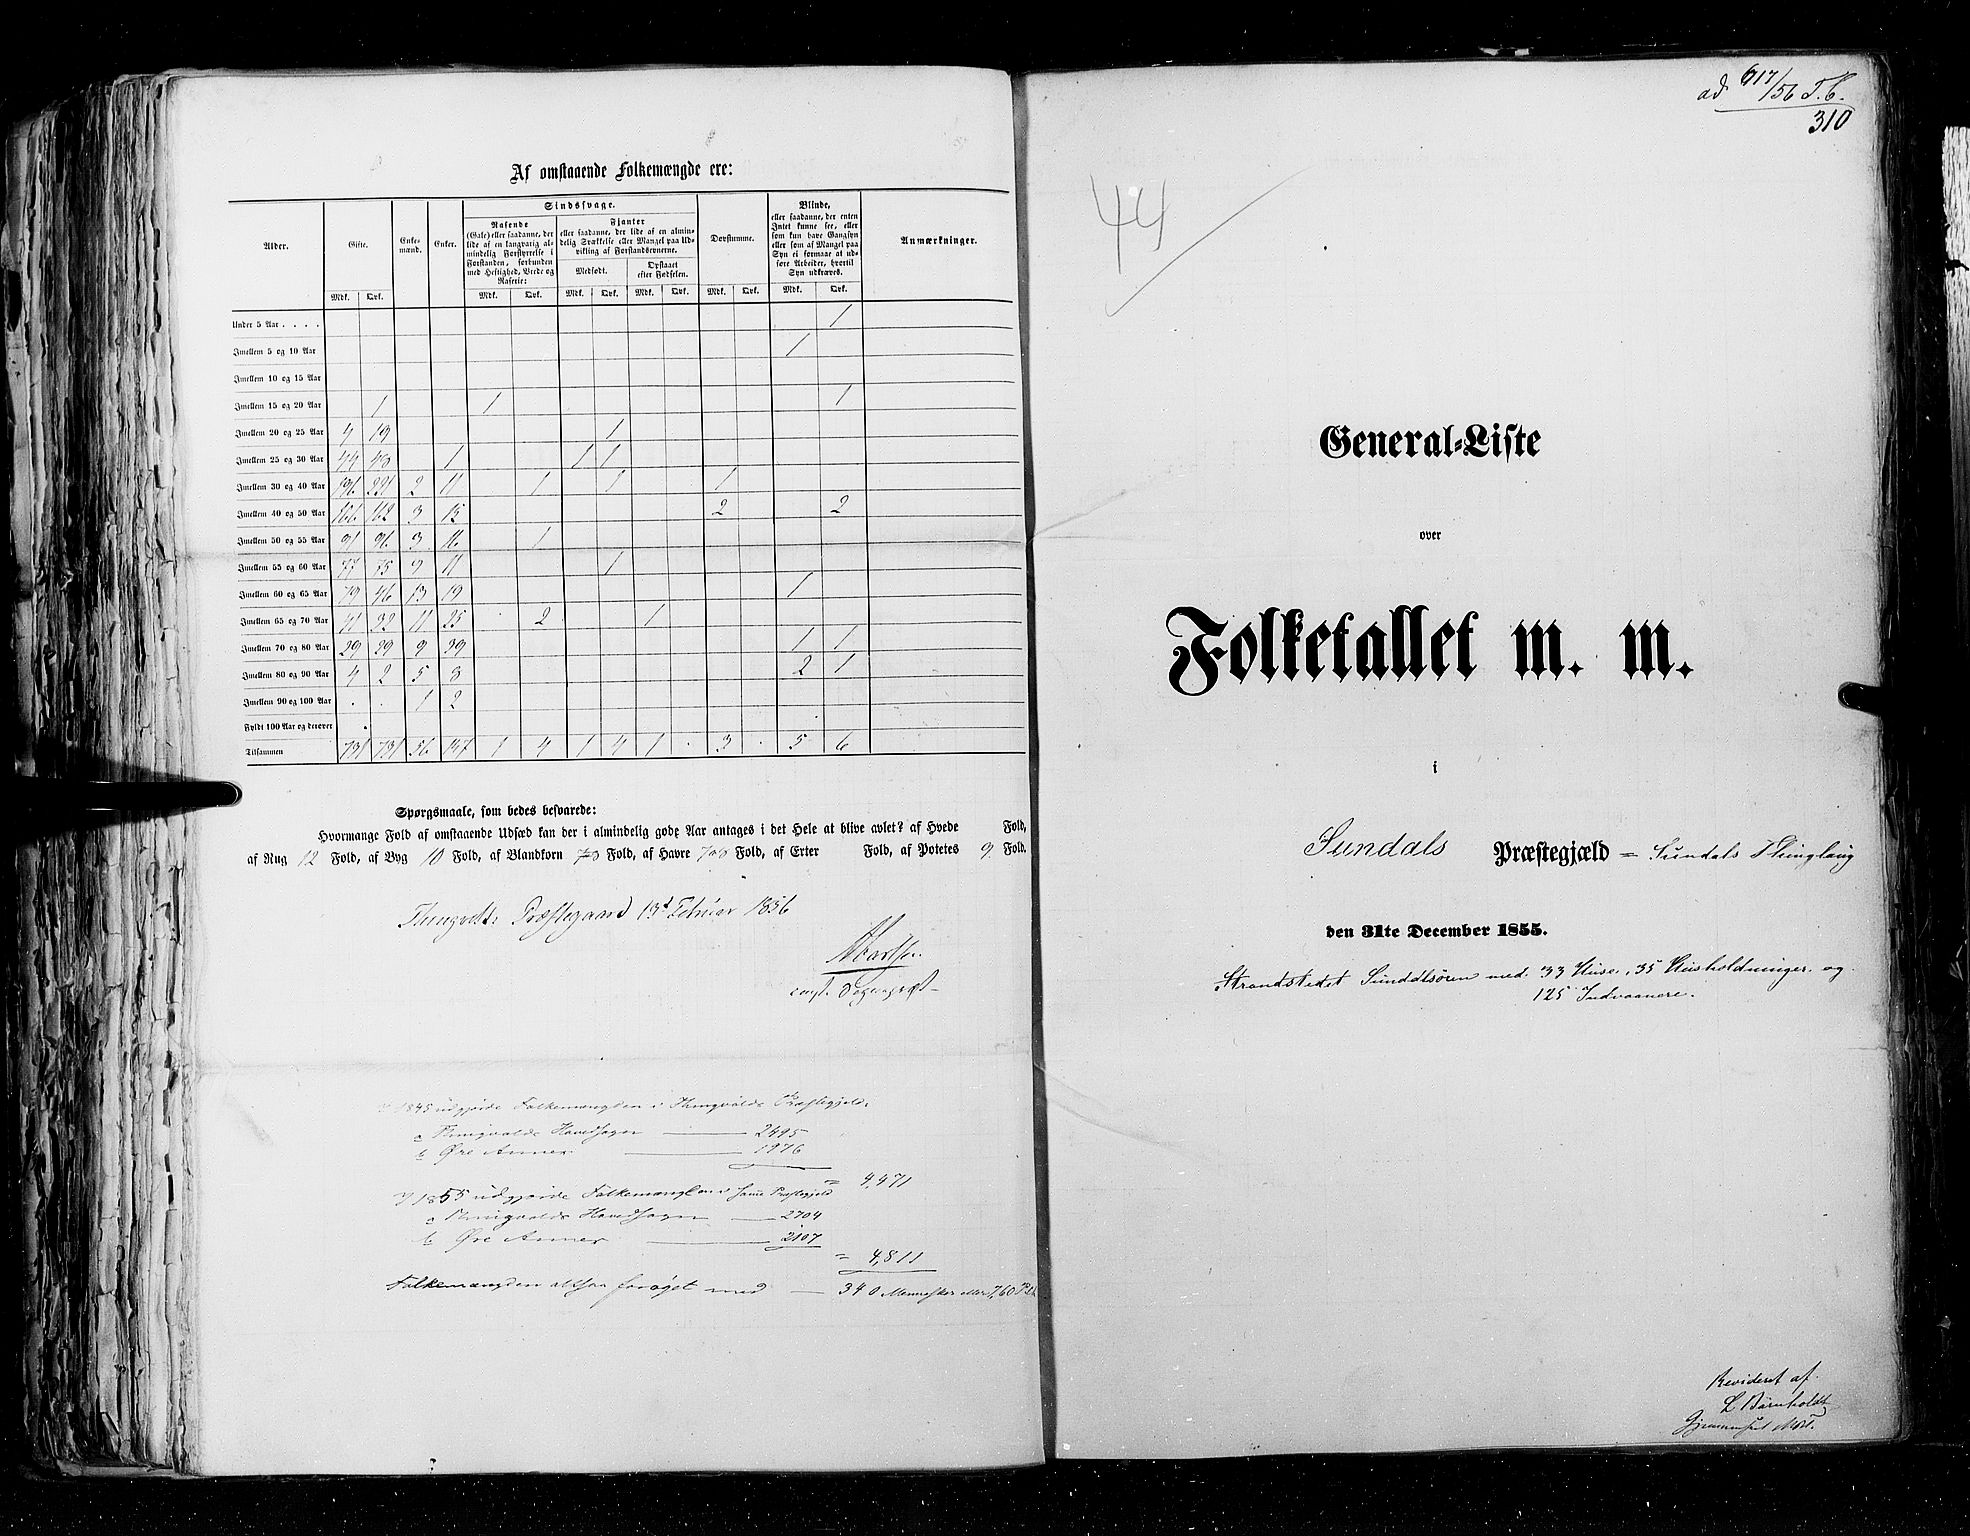 RA, Census 1855, vol. 5: Nordre Bergenhus amt, Romsdal amt og Søndre Trondhjem amt, 1855, p. 310